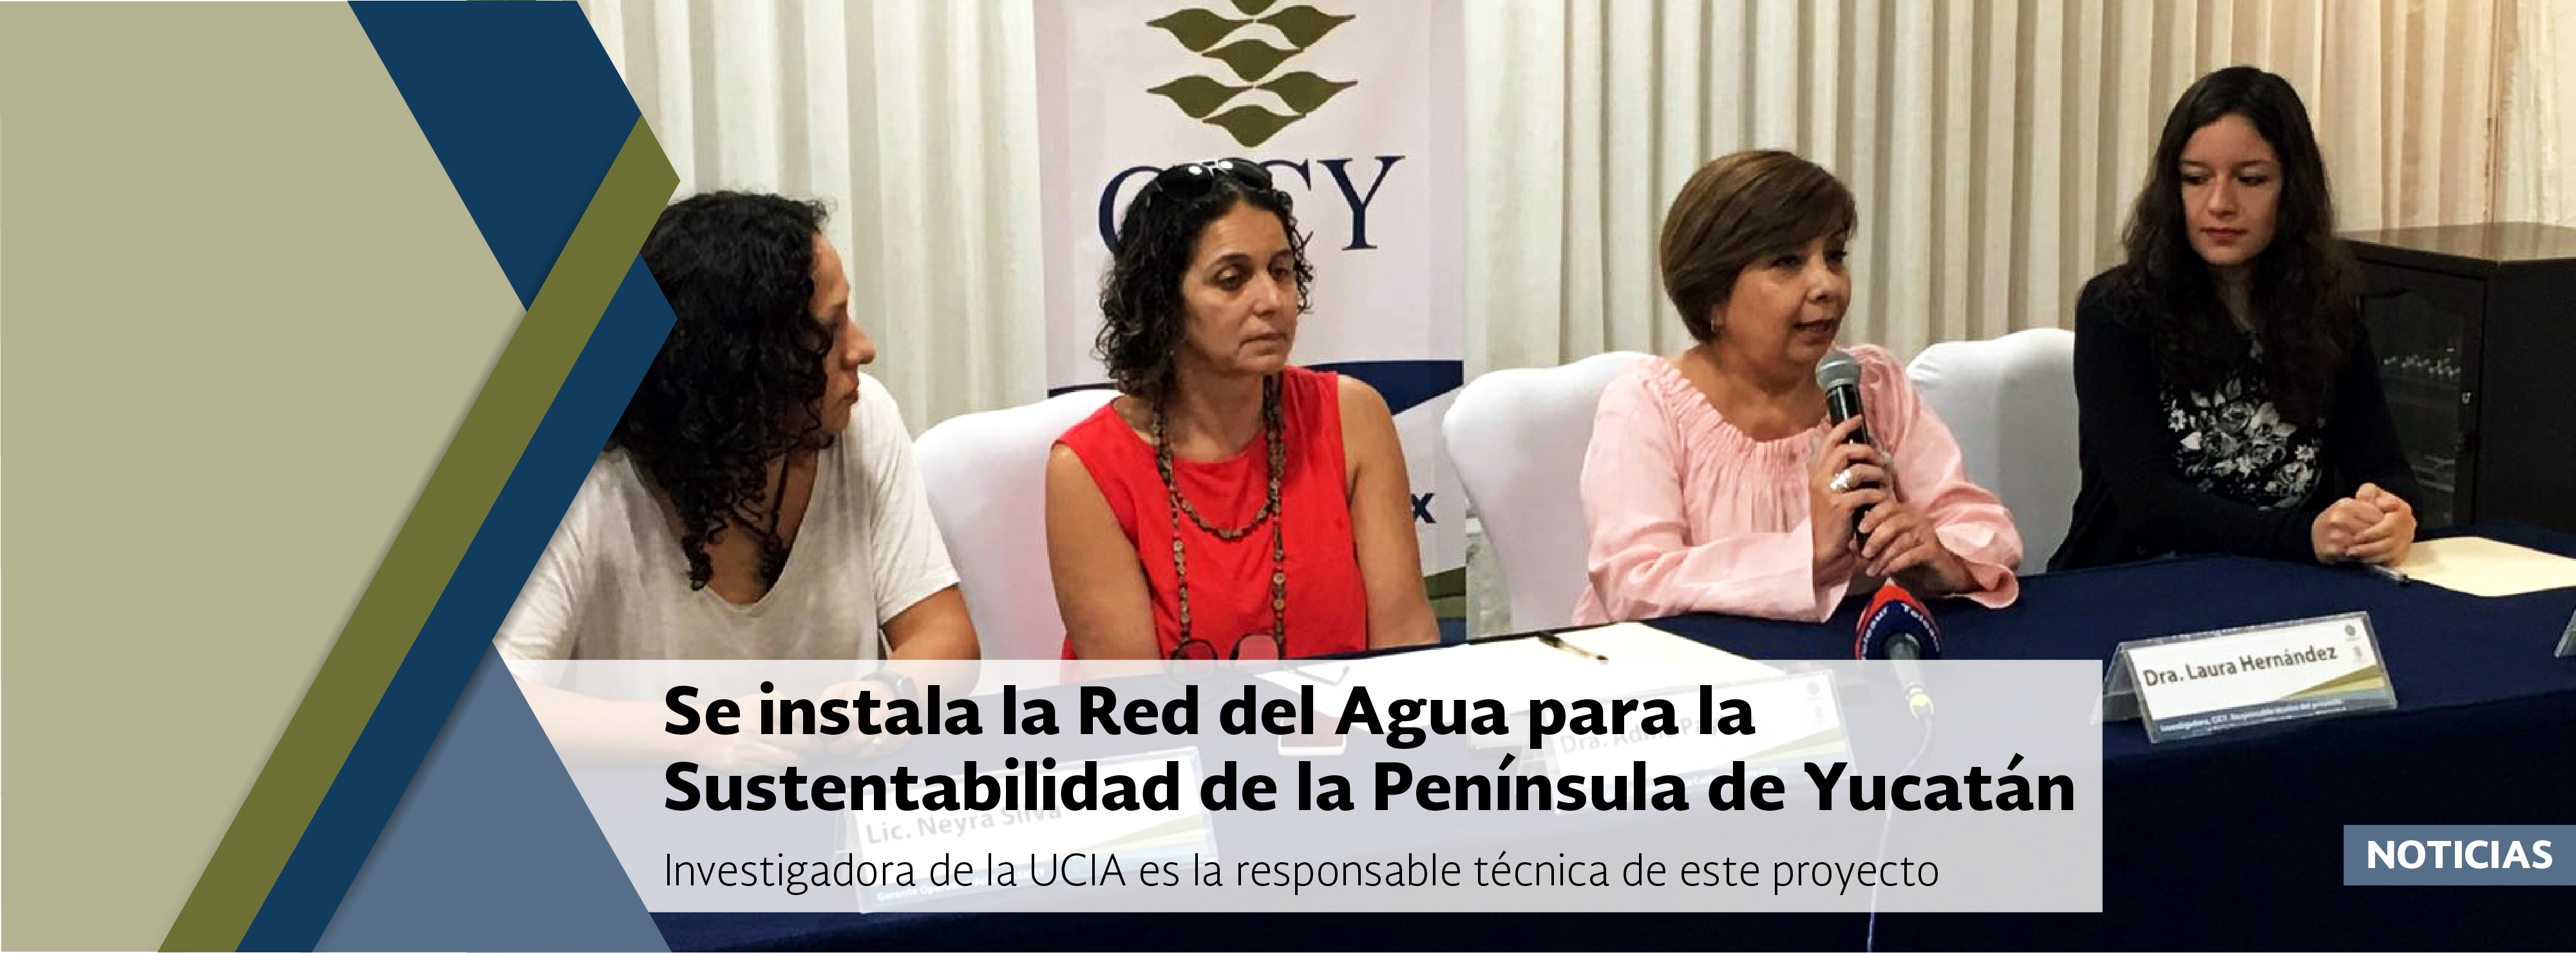 Se instala la Red del Agua para la Sustentabilidad de la Península de Yucatán